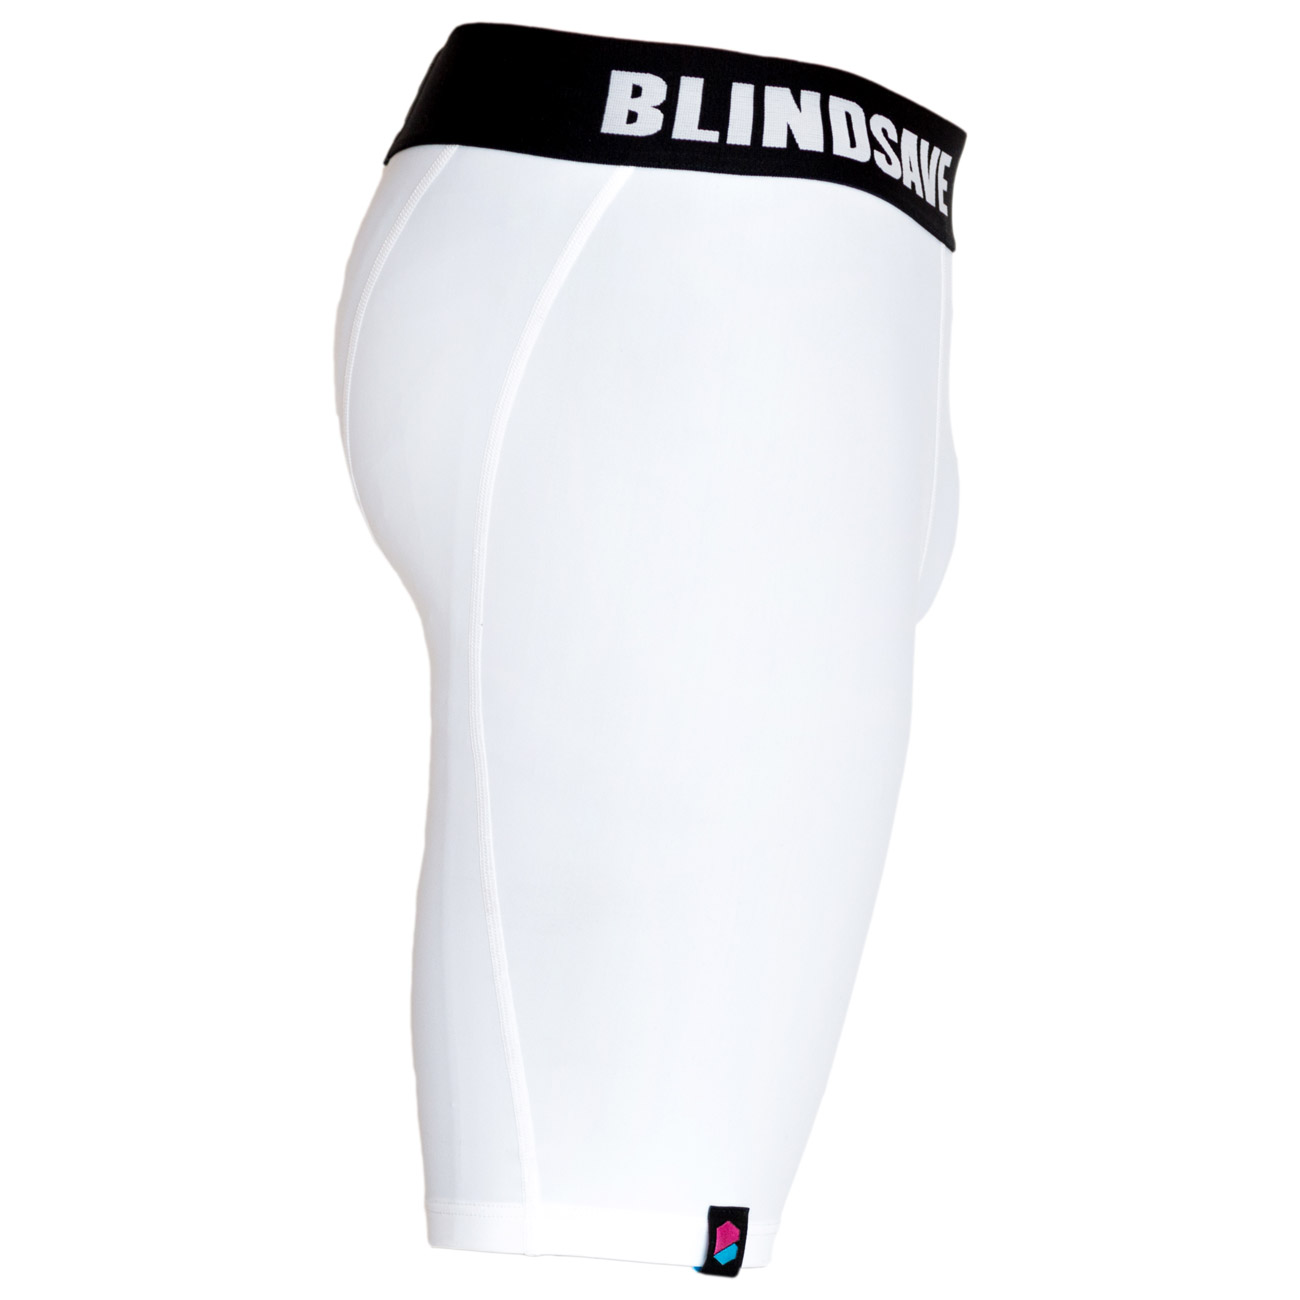 BLINDSAVE Compression Shorts White